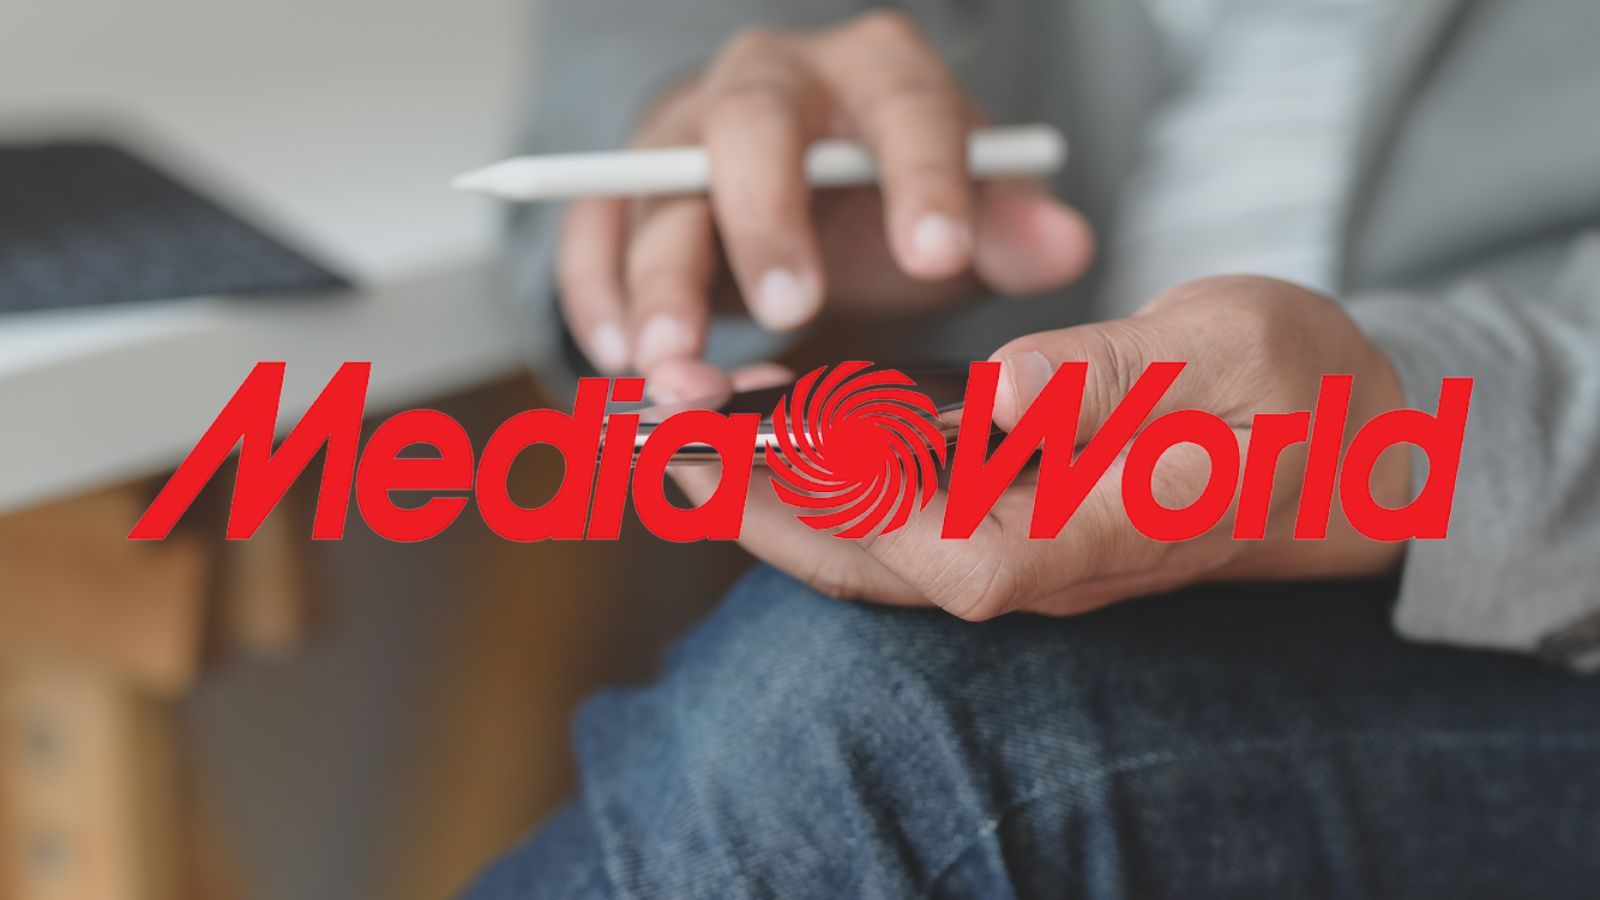 MediaWorld spacca i PREZZI, oggi tutto è al 50%, correte in NEGOZIO